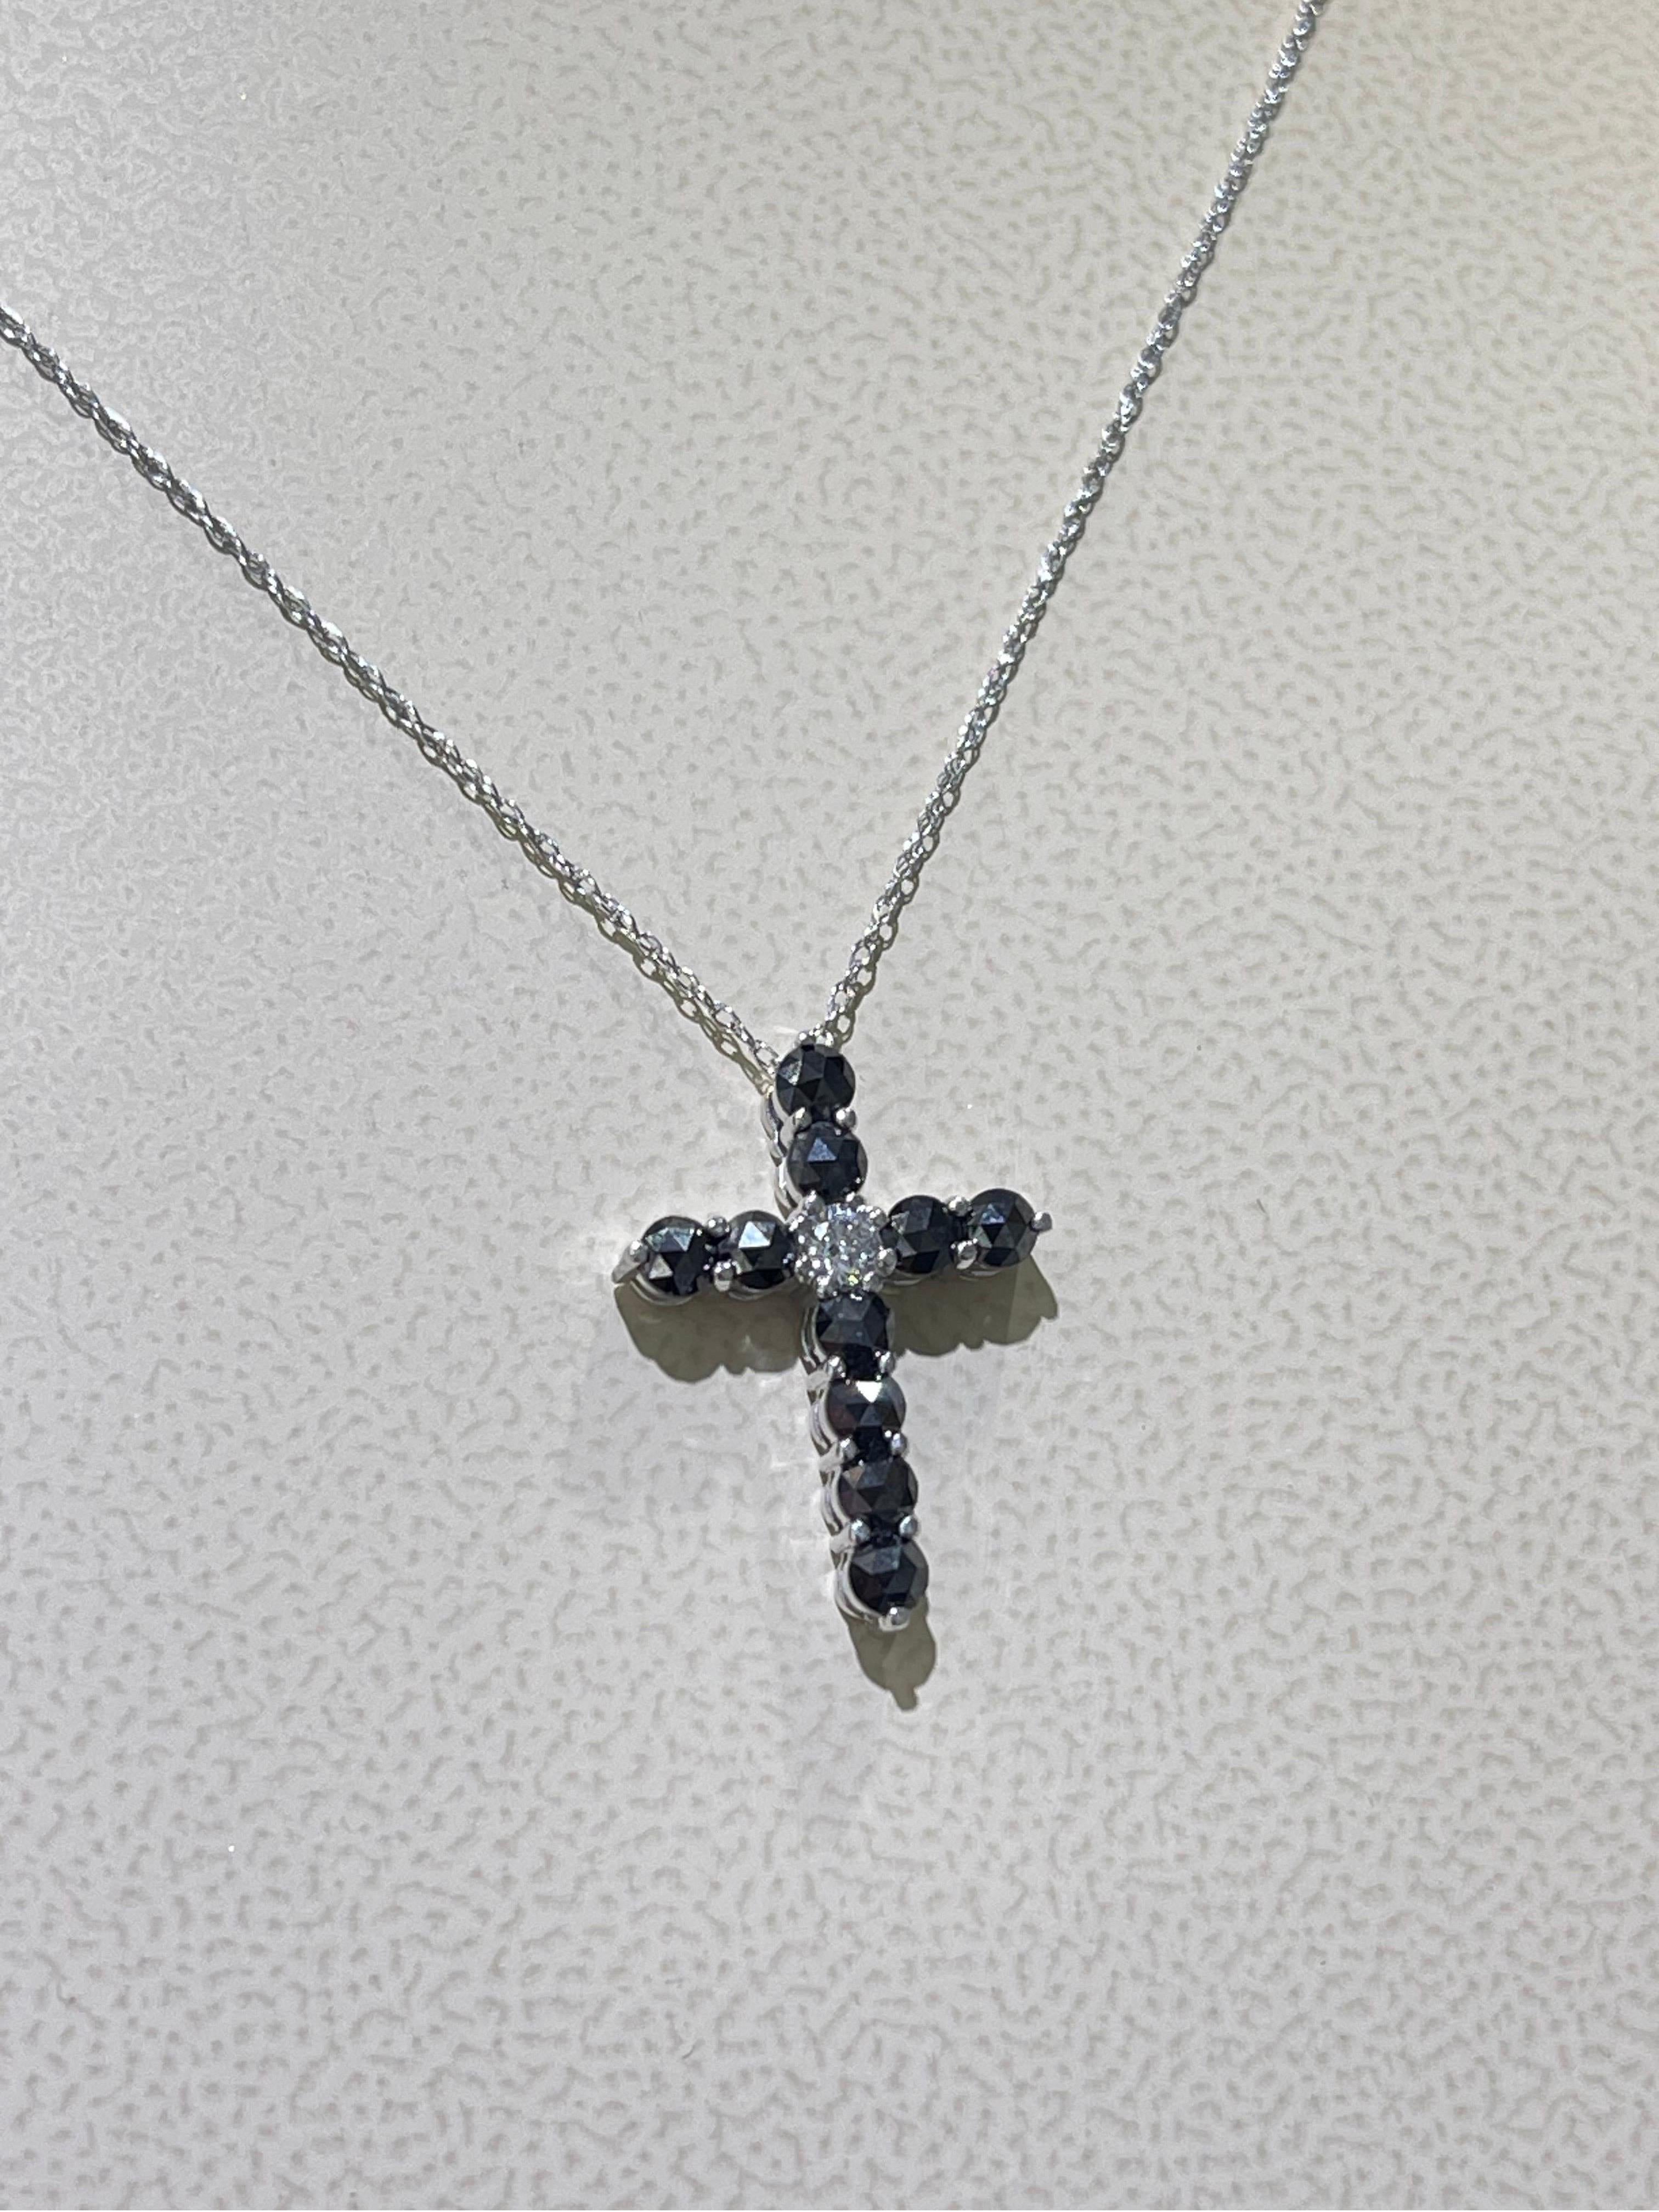 Collier croix en diamant en or blanc 18k,

- Poids total des diamants noirs et blancs : 1 carat,

- La longueur du collier est de 18